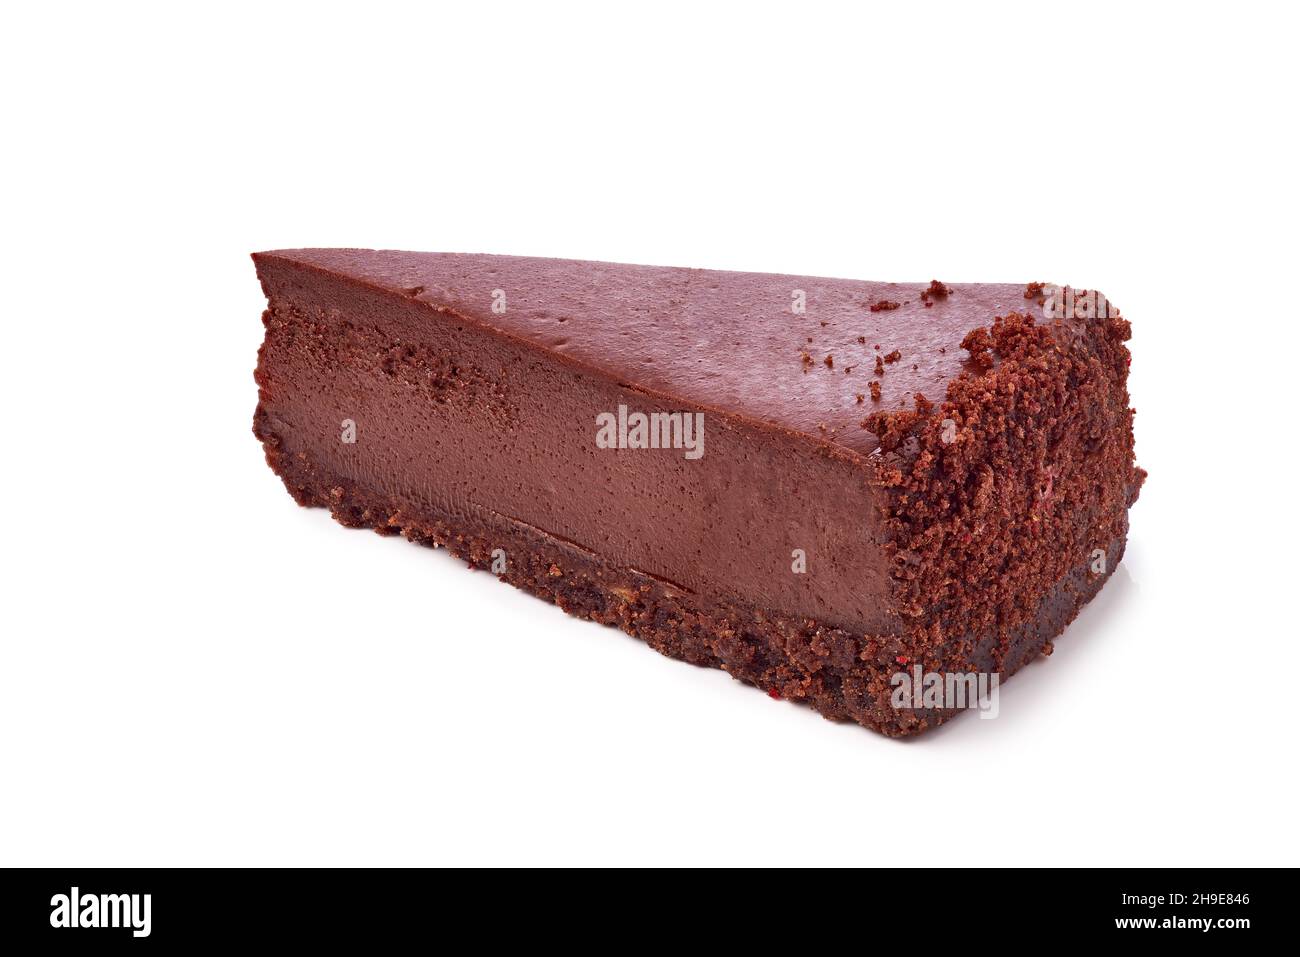 Scheibe Schokoladenkäsekuchen auf Weiß Stockfoto